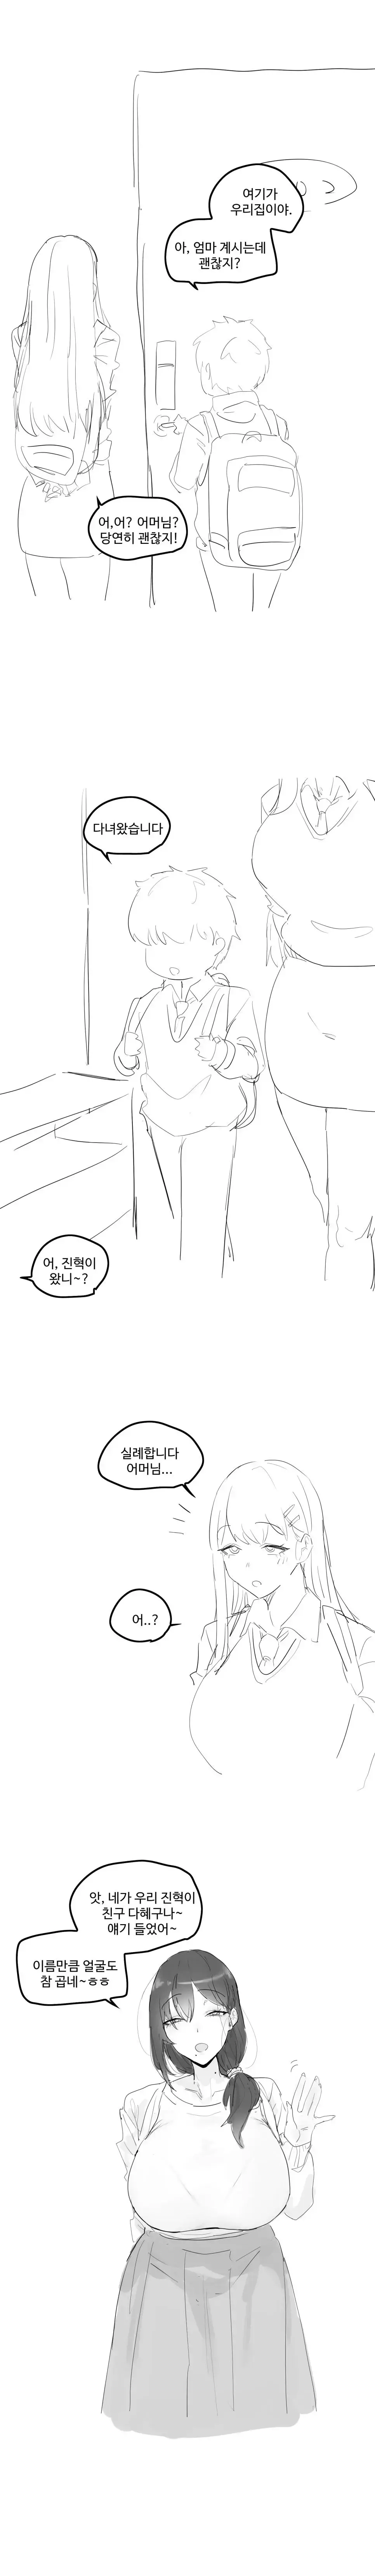 ㅆㄷ) ㅇㅎ) 짝사랑하는 남자애 집에 놀러가게된 만화.manhwa | mbong.kr 엠봉